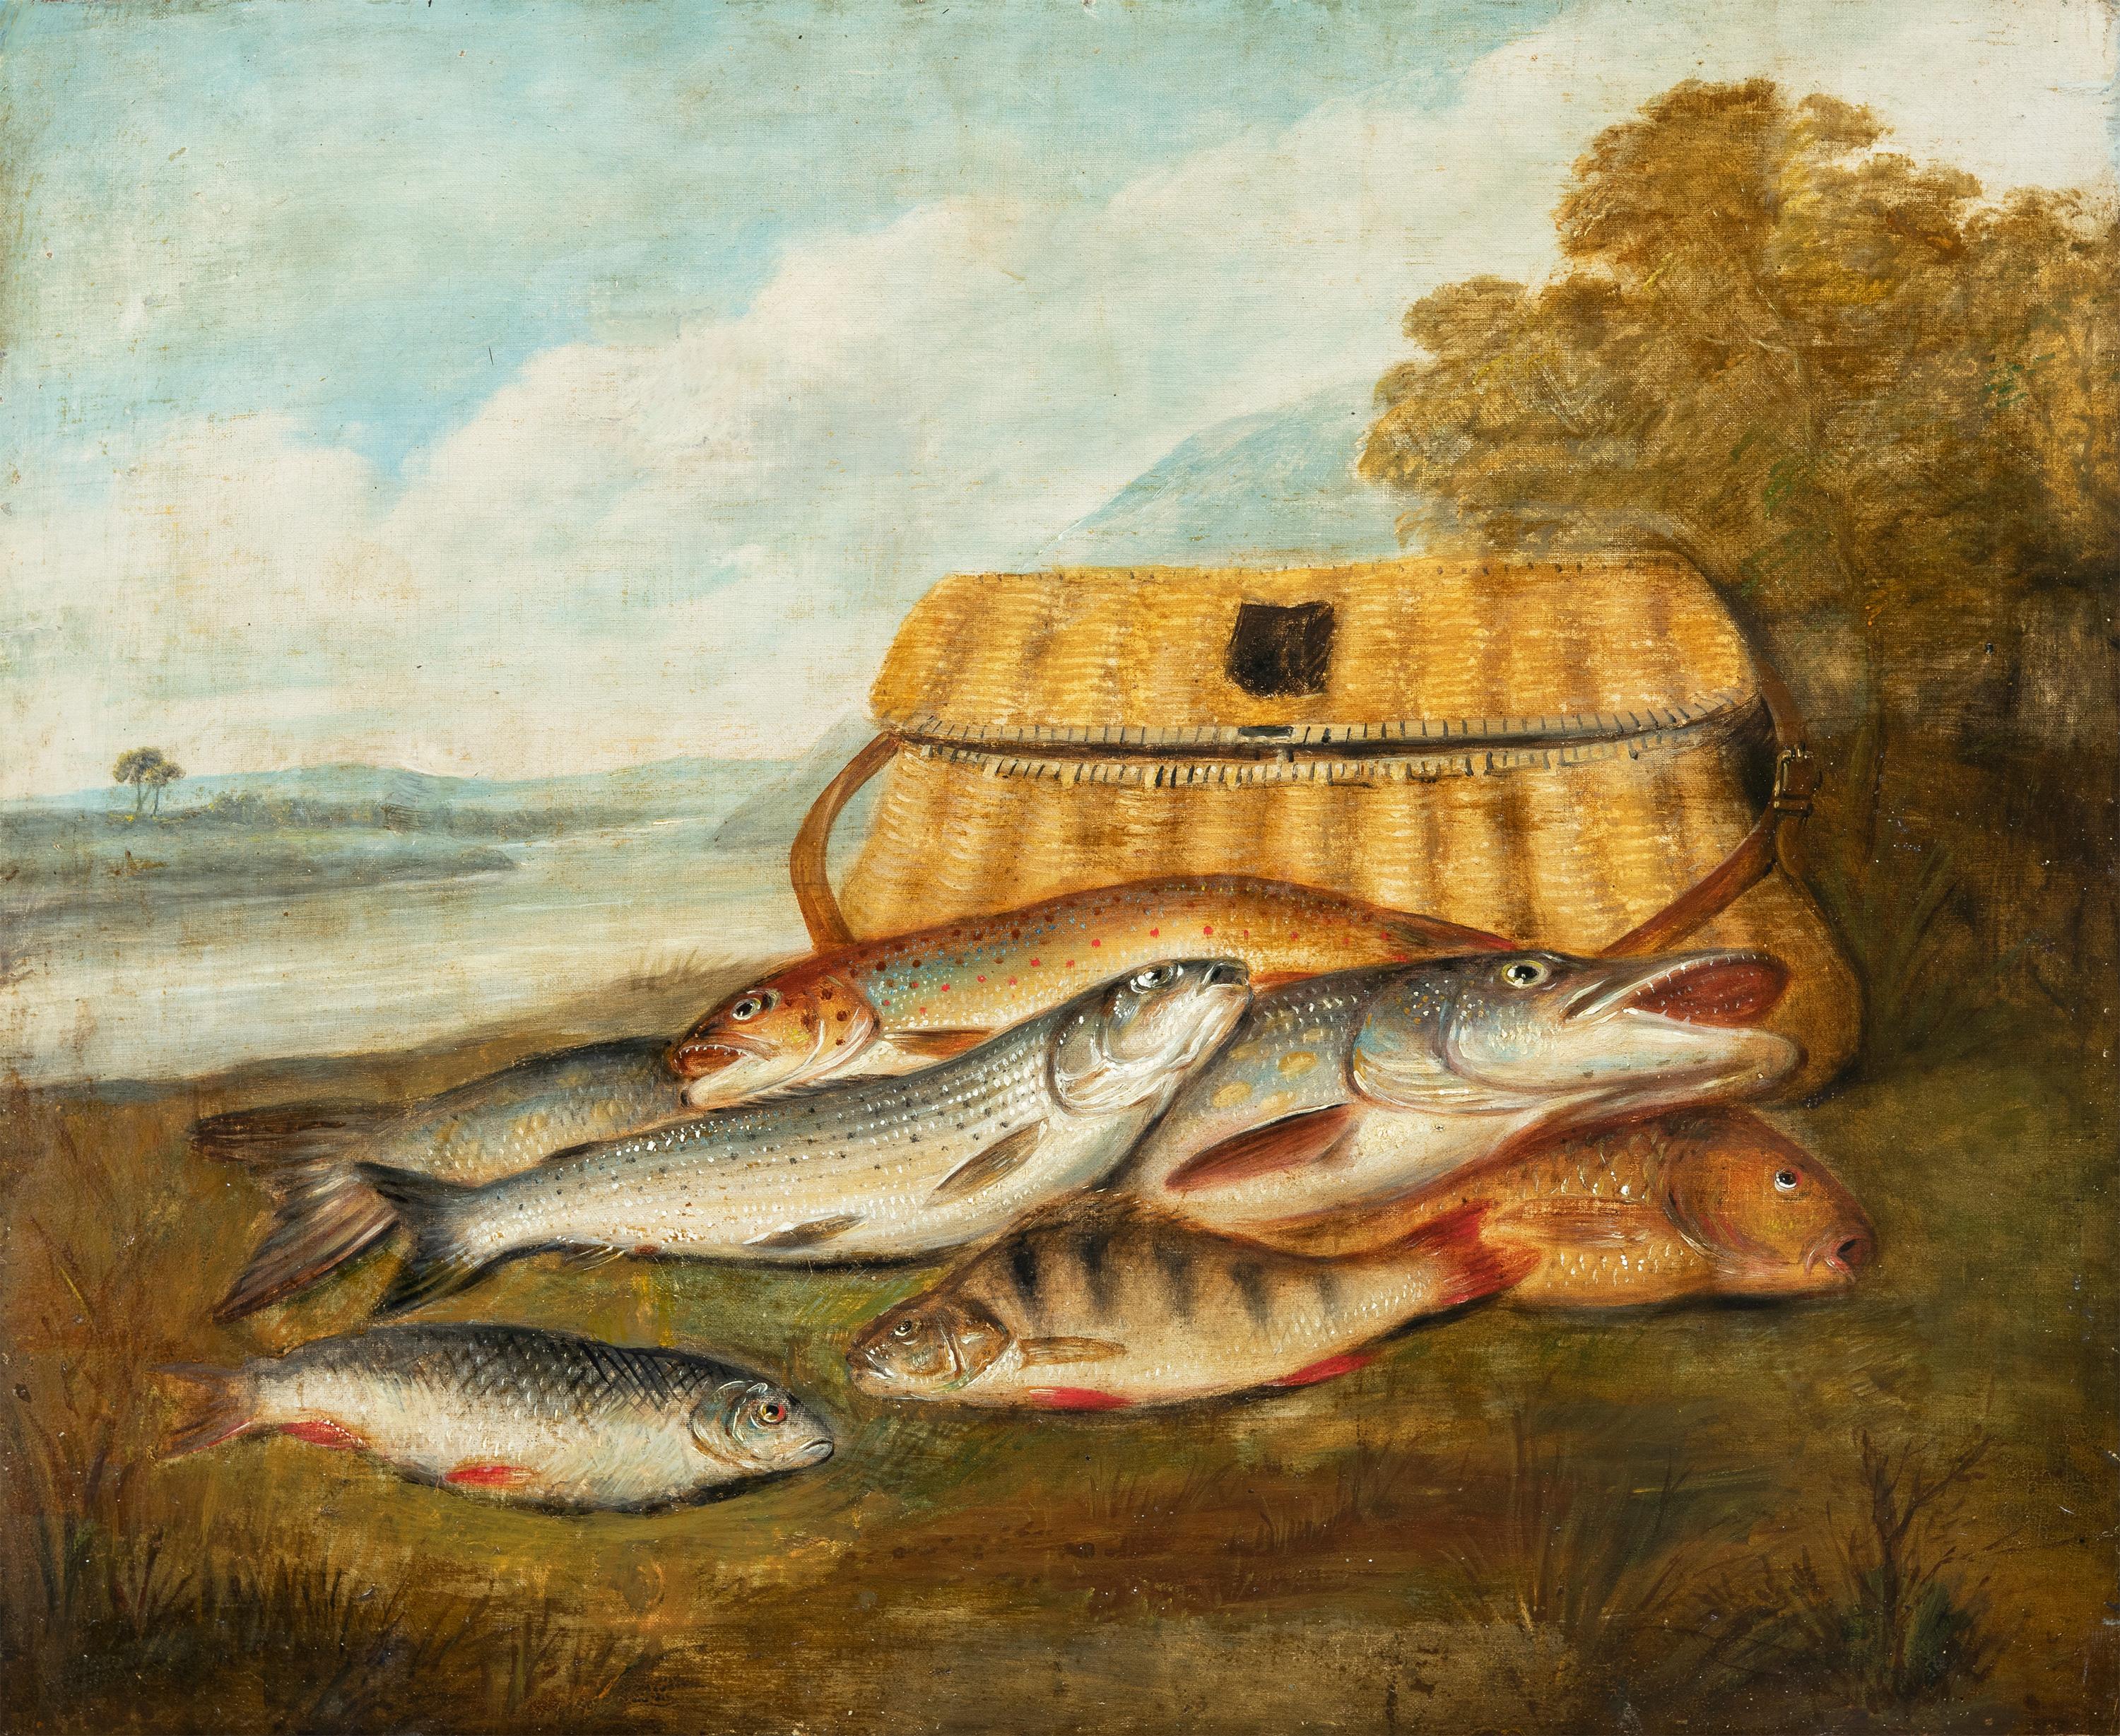 Naturalistischer Maler (Dutch School) - Stilllebenmalerei des 19. Jahrhunderts - Fisch